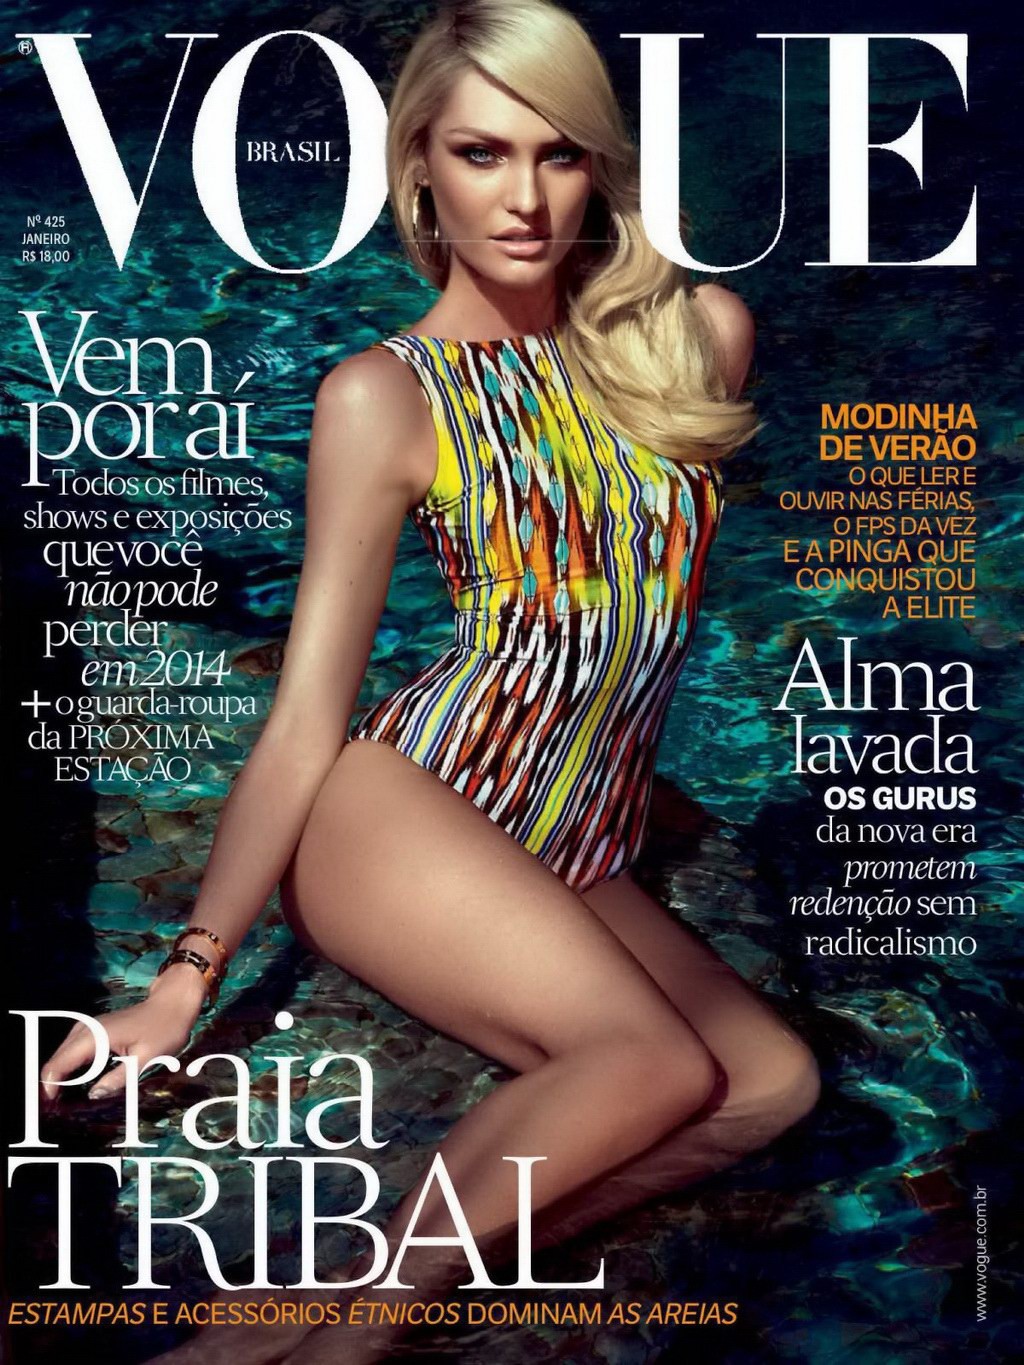 Candice swanepoel sieht sehr heiß aus im vogue magazine brasilien photoshoot
 #75208195